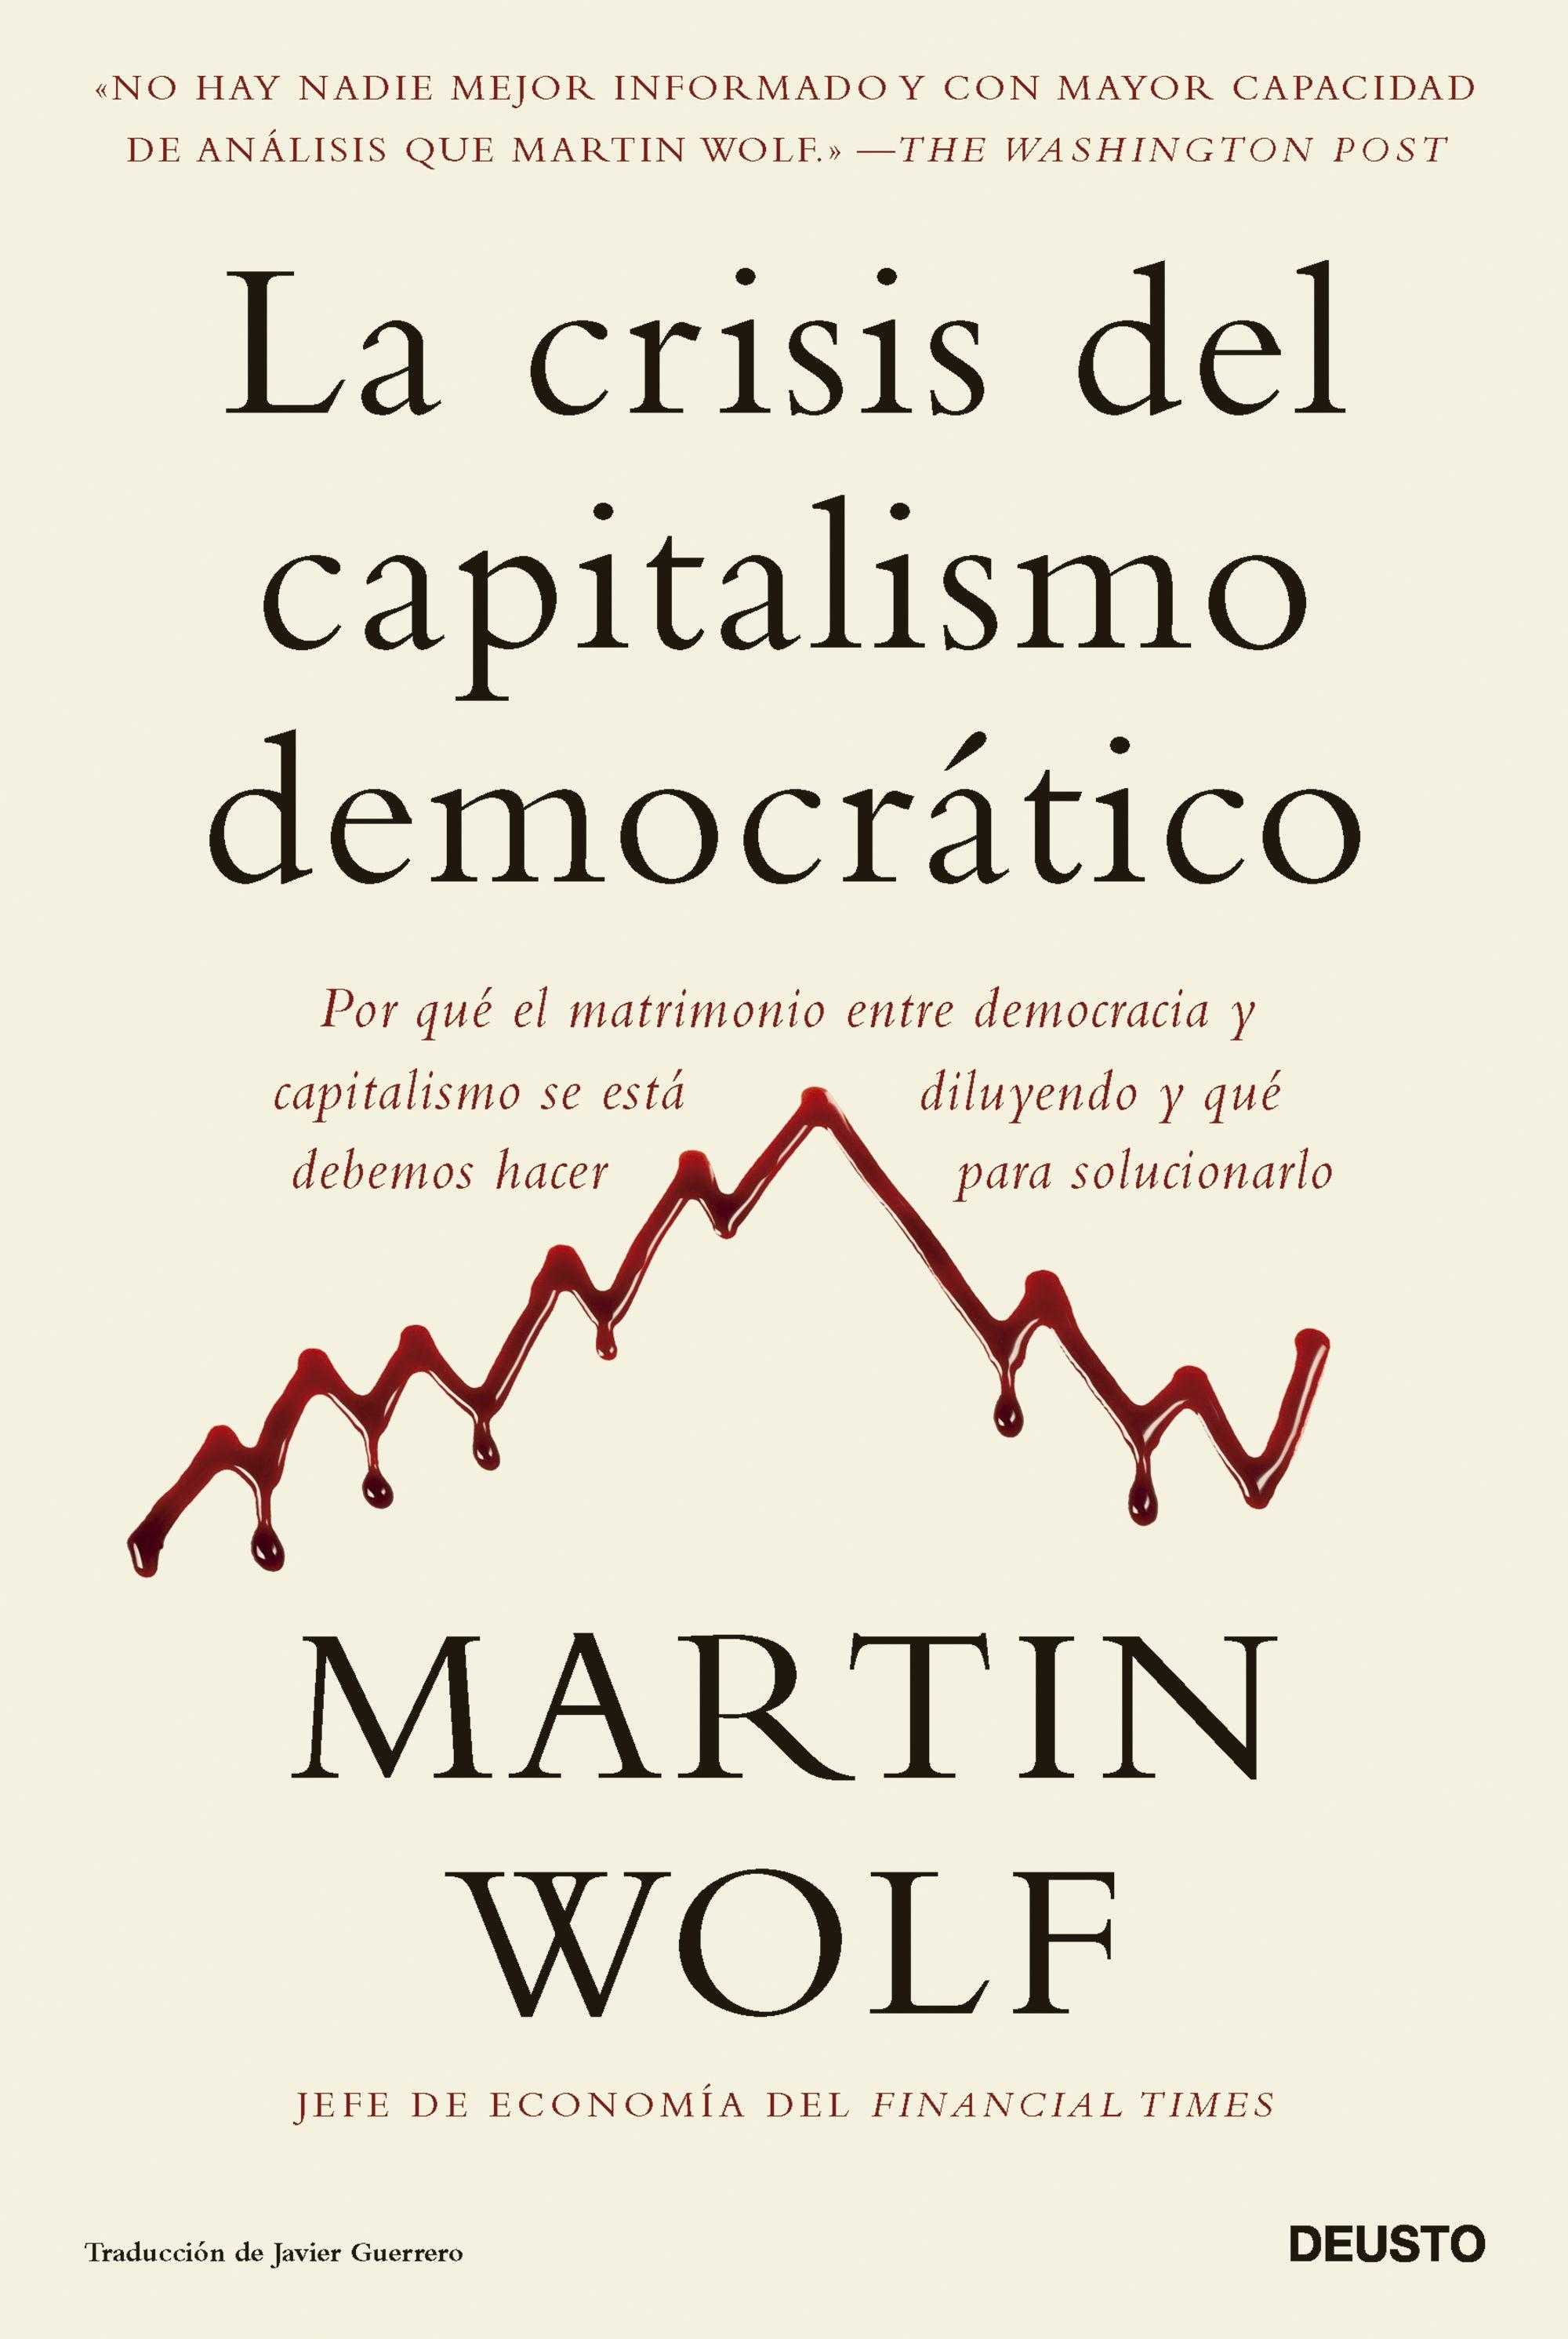 La Crisis del Capitalismo Democrático "Por que el Matrimonio Entre Democracia y Capitalismo se Está Diluyendo Y". 